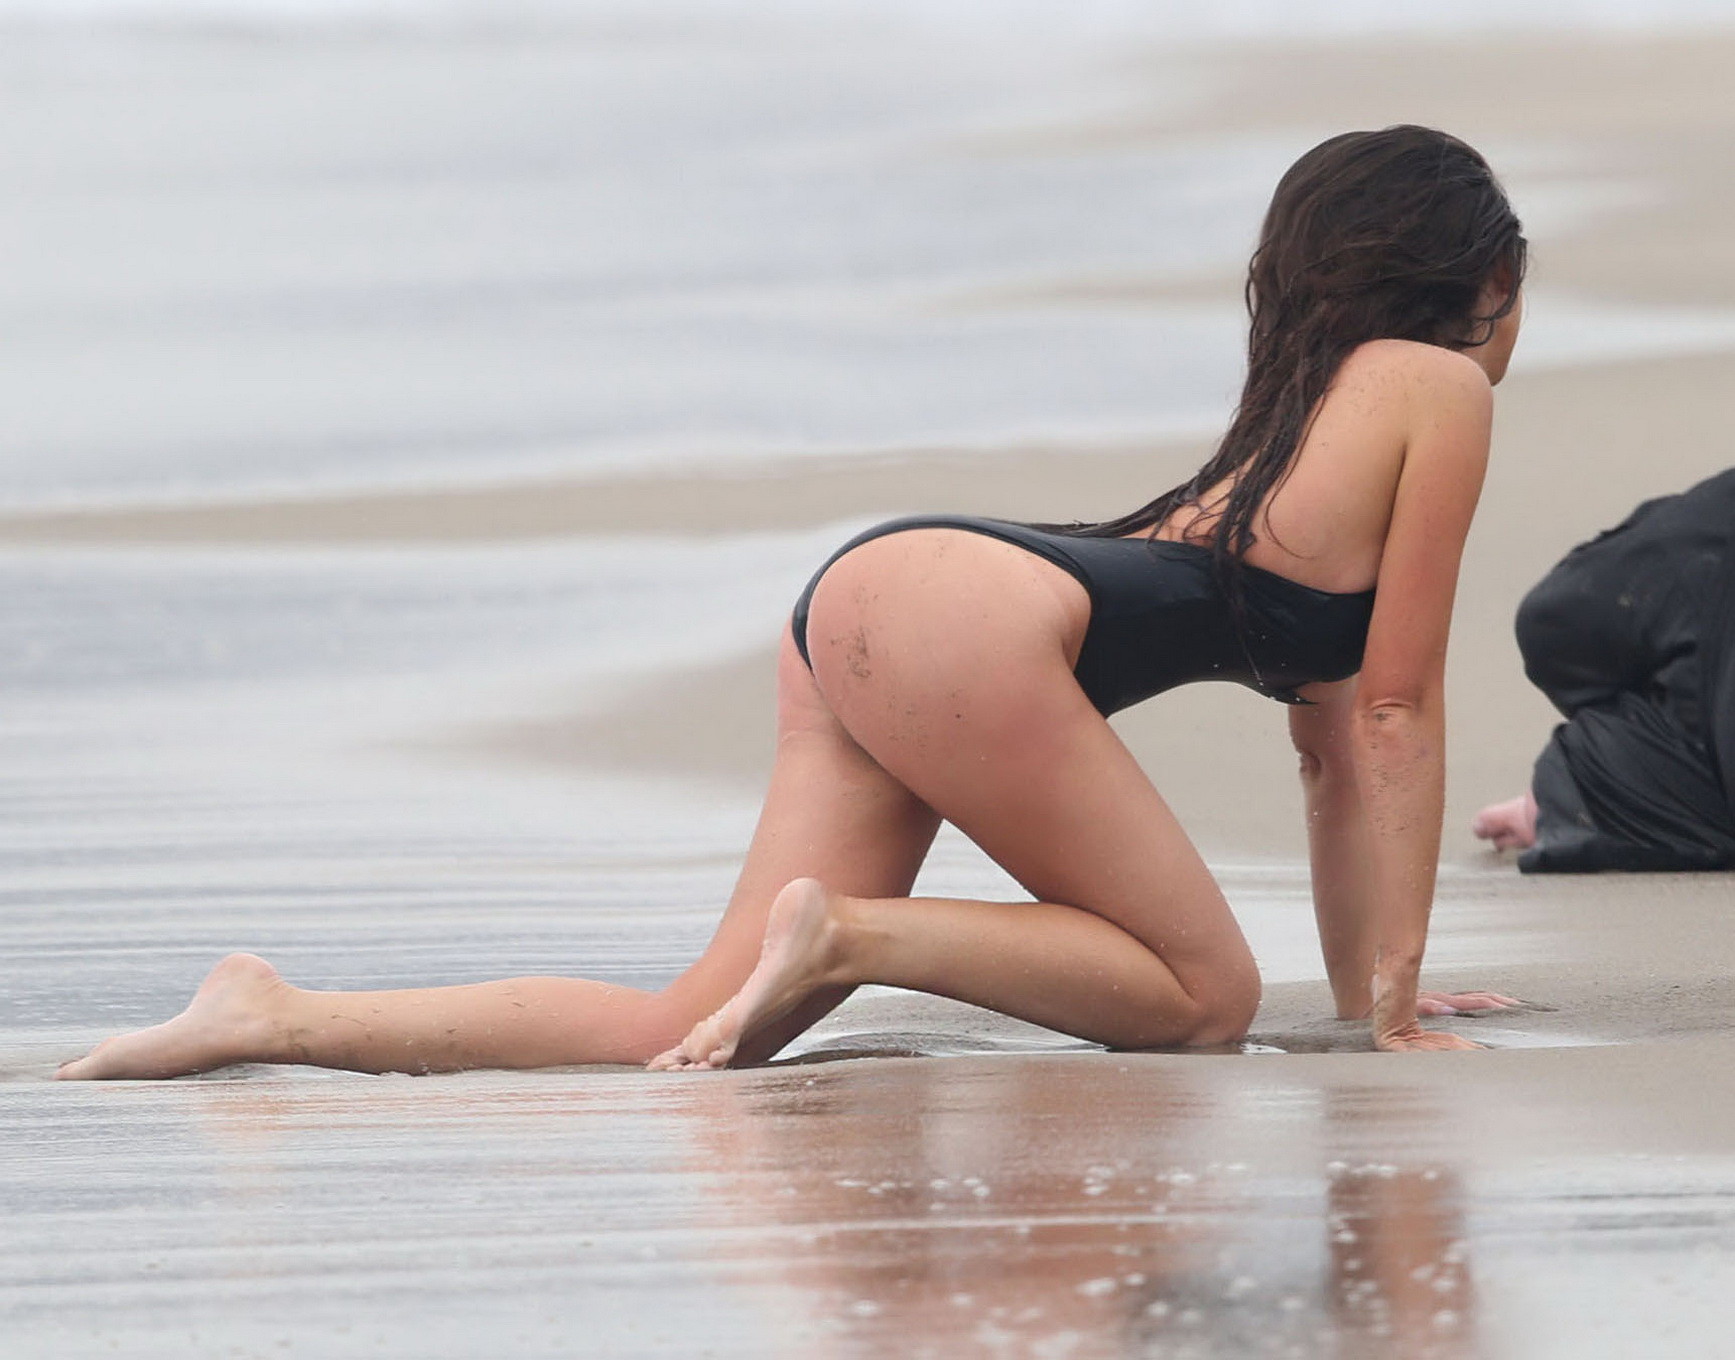 Kayla swift montre ses seins et ses fesses en maillot de bain noir alors qu'elle se gèle sur la plage.
 #75177293